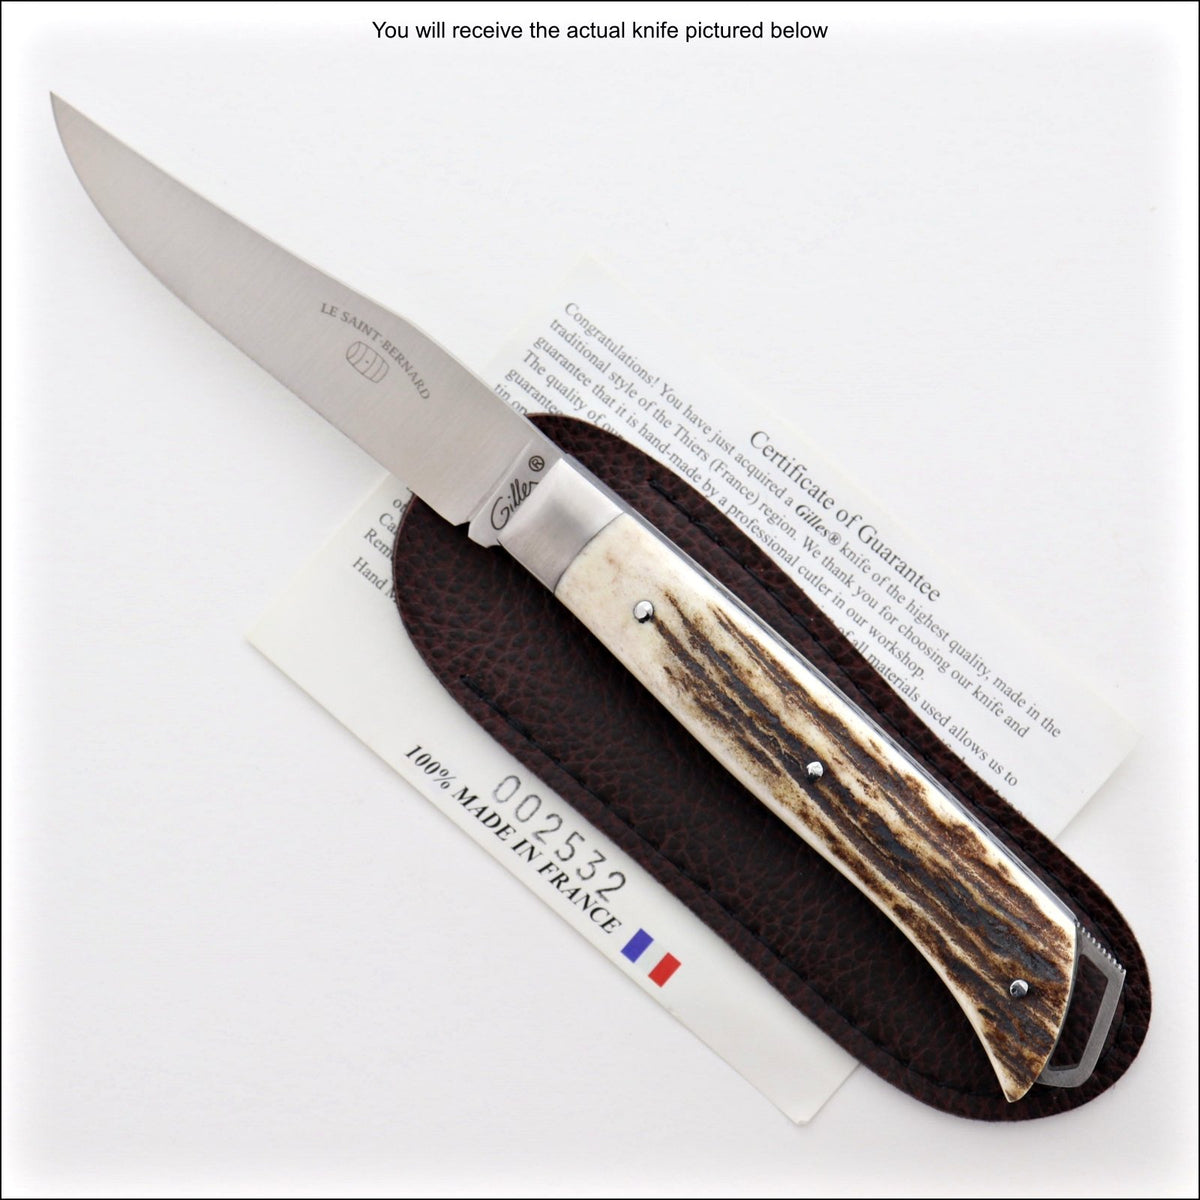 Le Saint-Bernard Pocket Knife - Deer Stag Handle - G